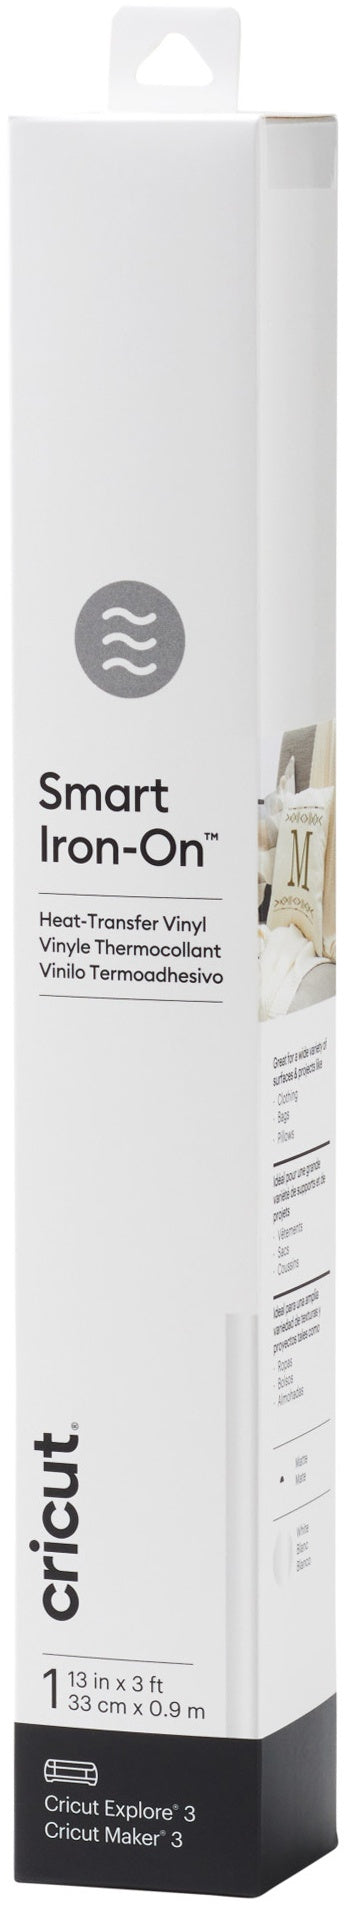 Iron-on Smart Vinyl